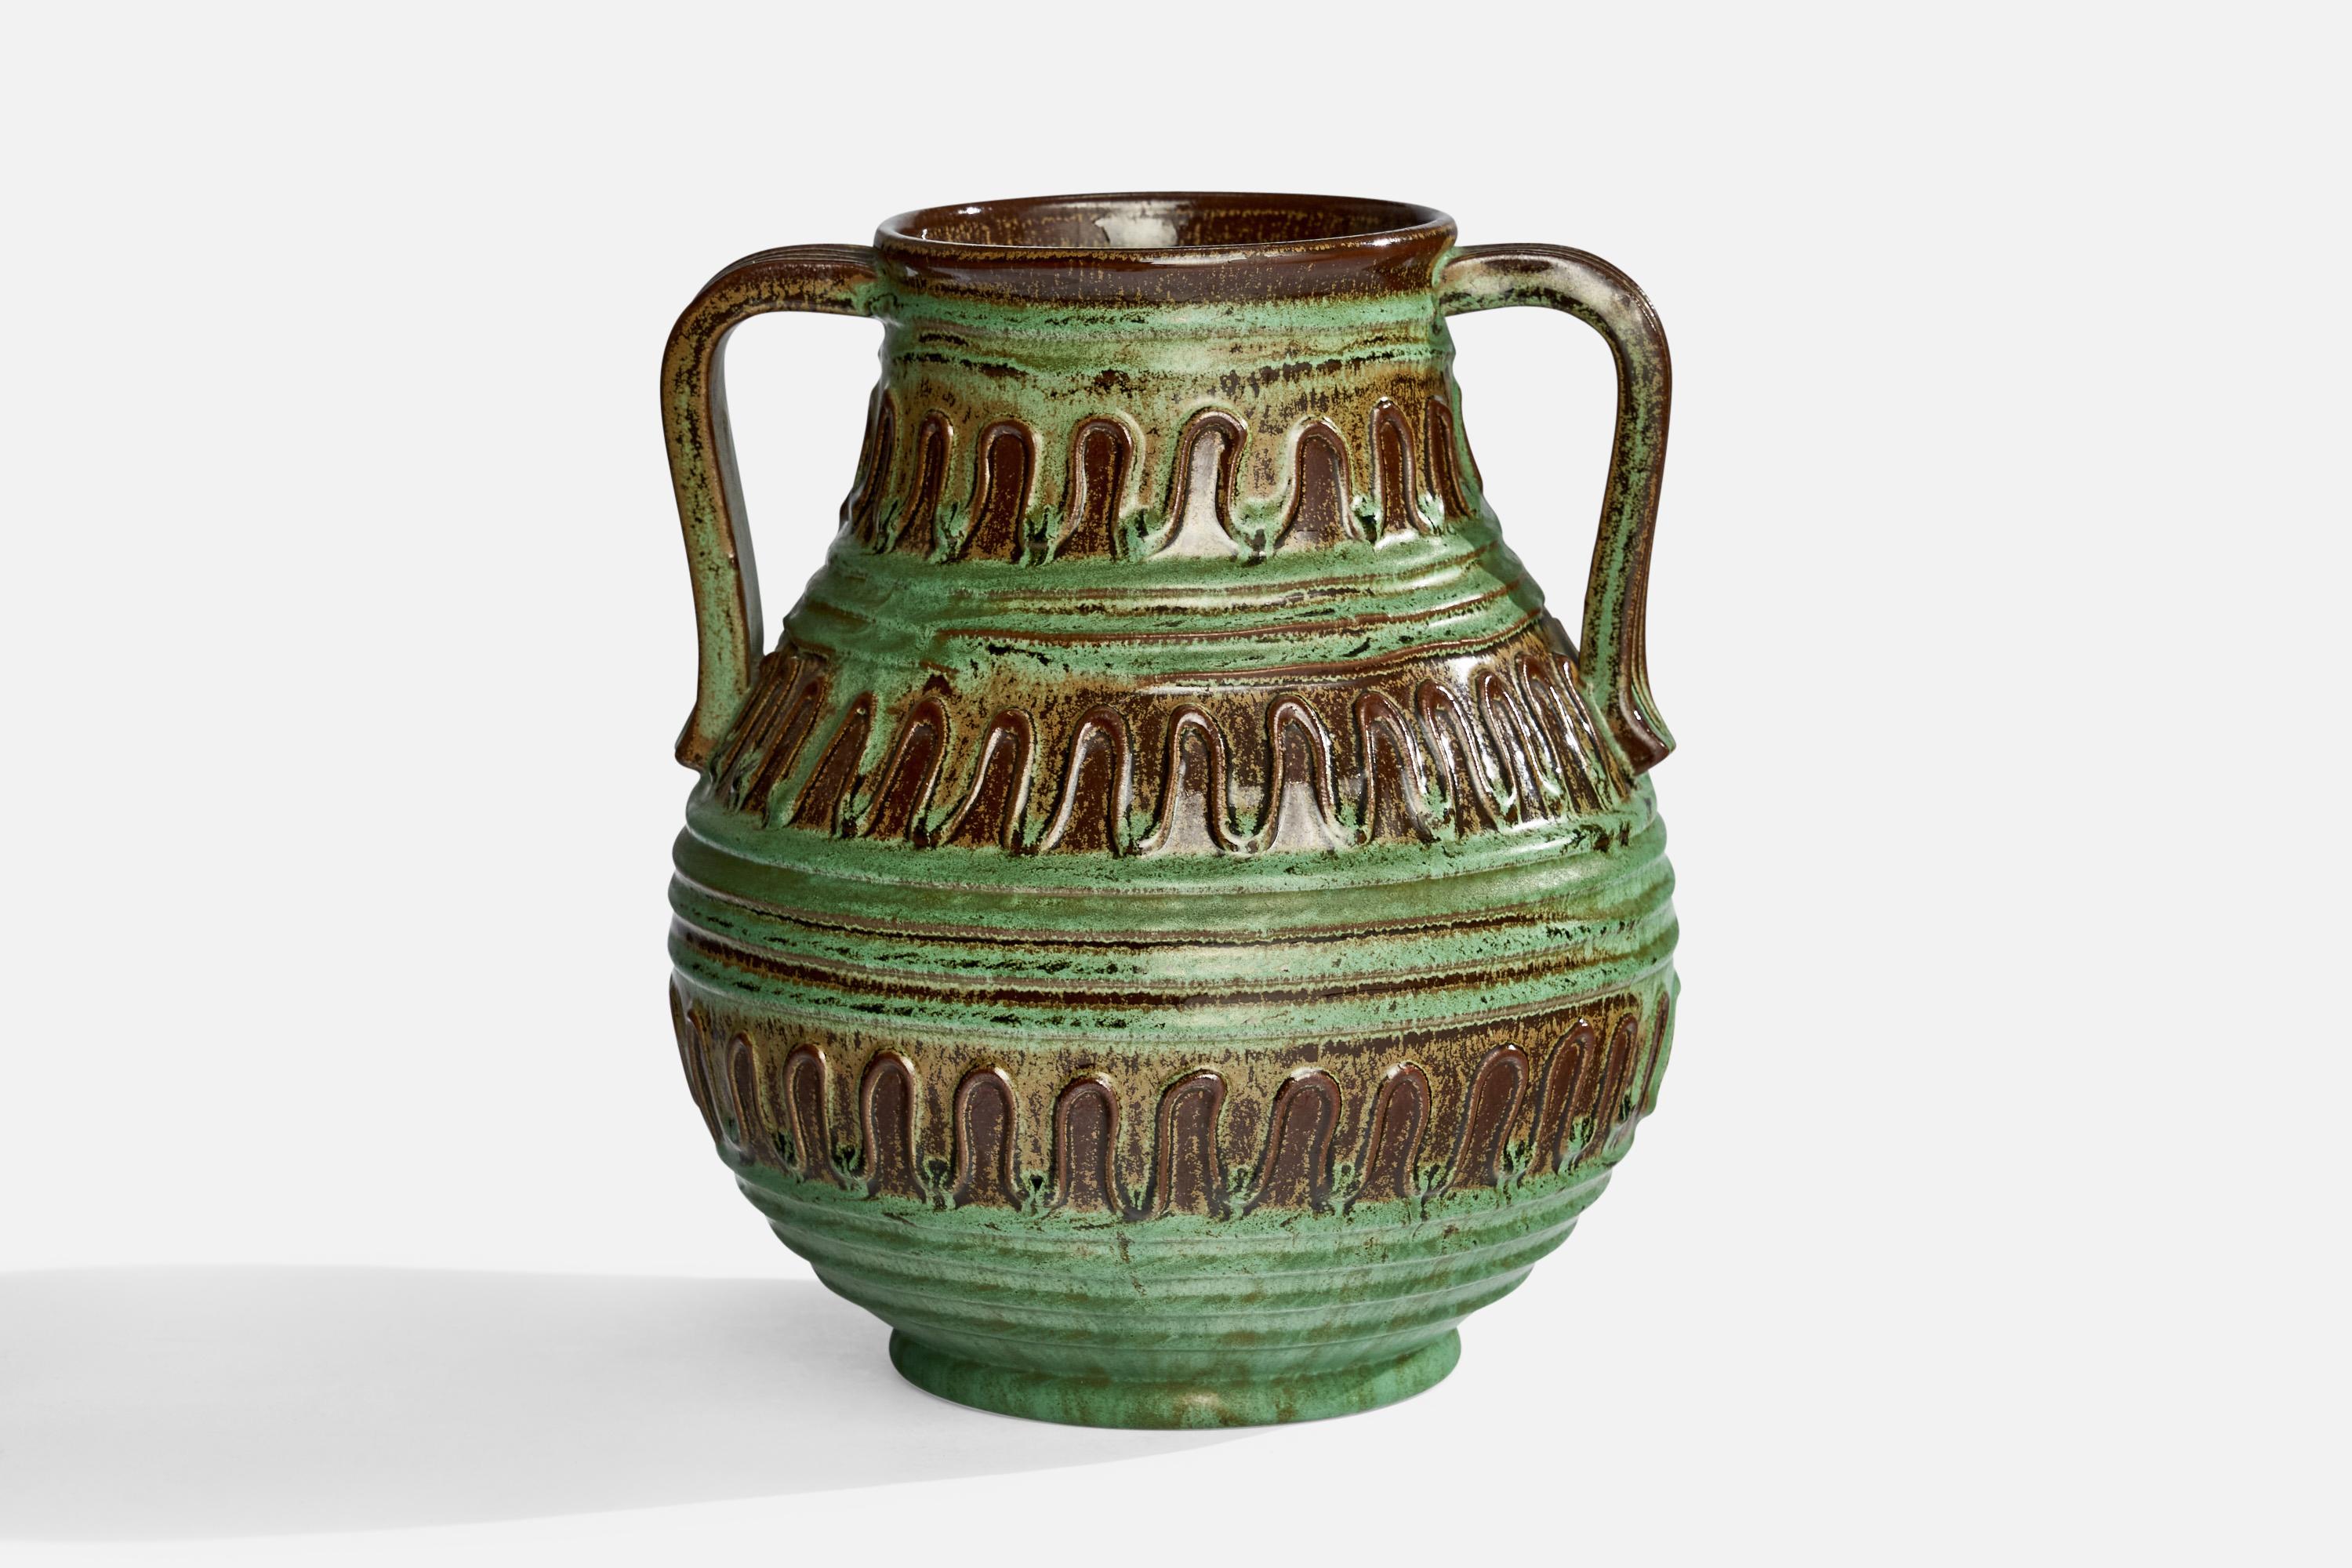 Vase aus grün und braun glasiertem Steingut, entworfen von Erik Mornils und hergestellt von Nittsjö, Schweden, um 1930.